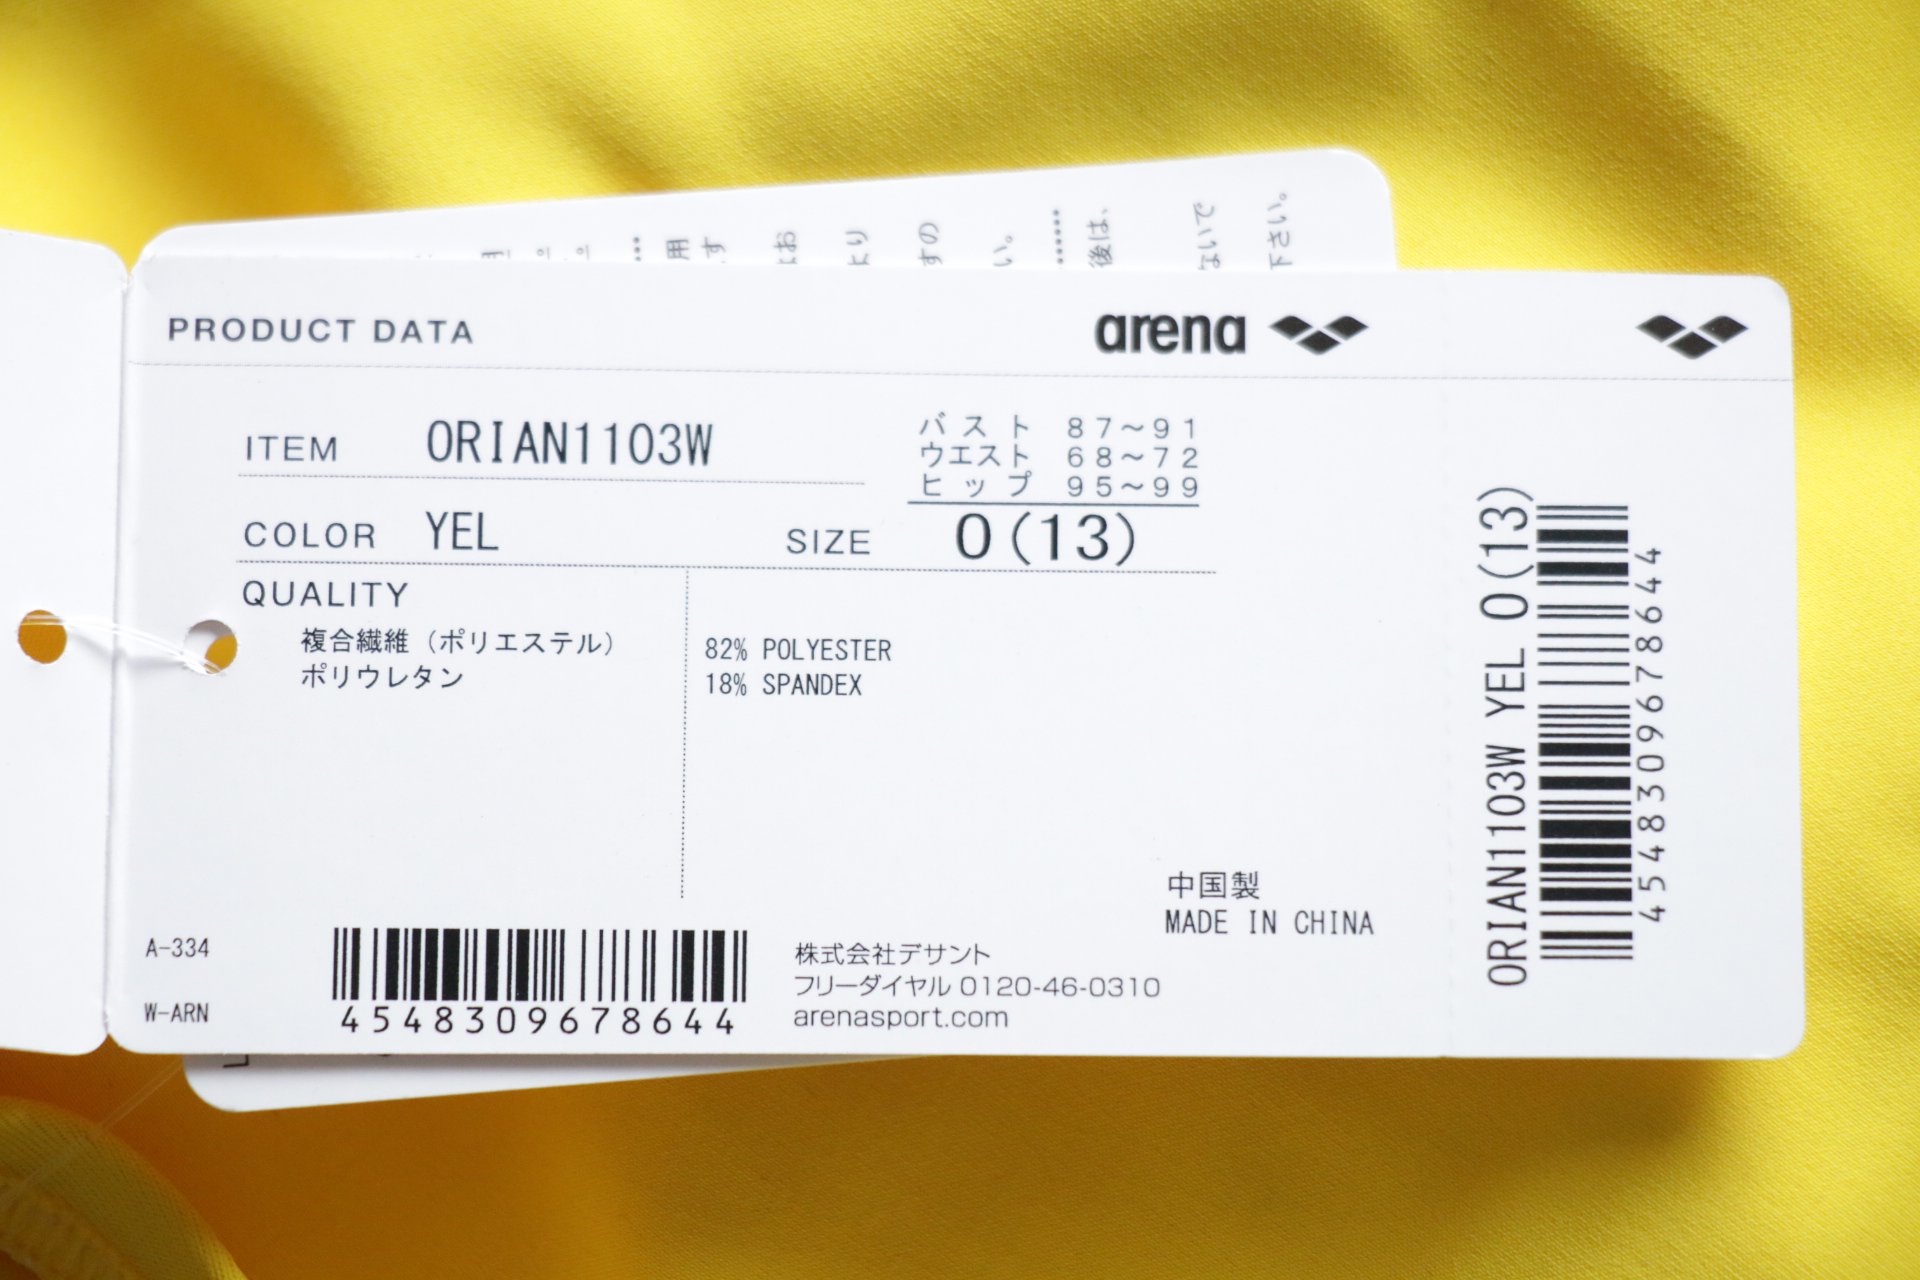 ORIAN-1103W